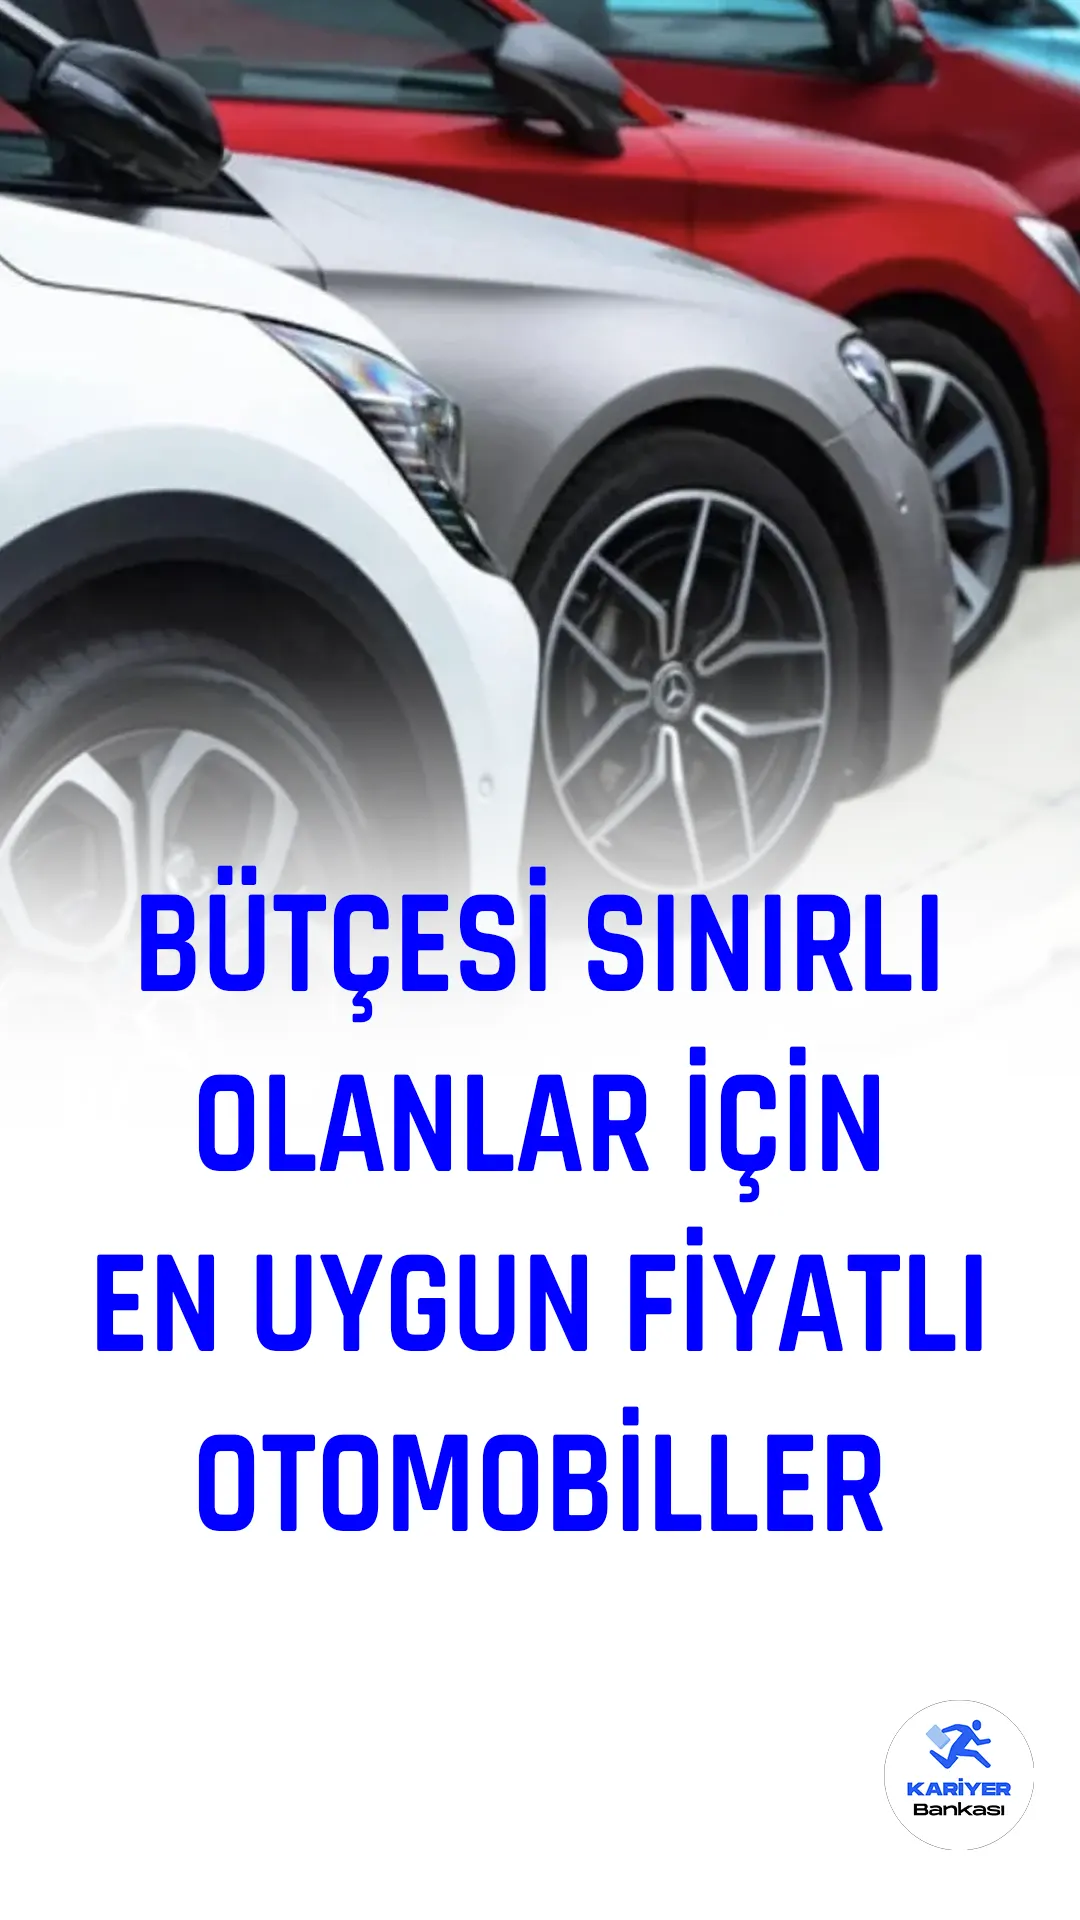 Türkiye'de otomobil piyasasında bütçesi sınırlı olanlar için uygun fiyatlı otomobiller bulmak oldukça önemli bir konu. Türkiye'de satın alınabilecek en uygun fiyatlı 10 otomobili sizler için derledik.